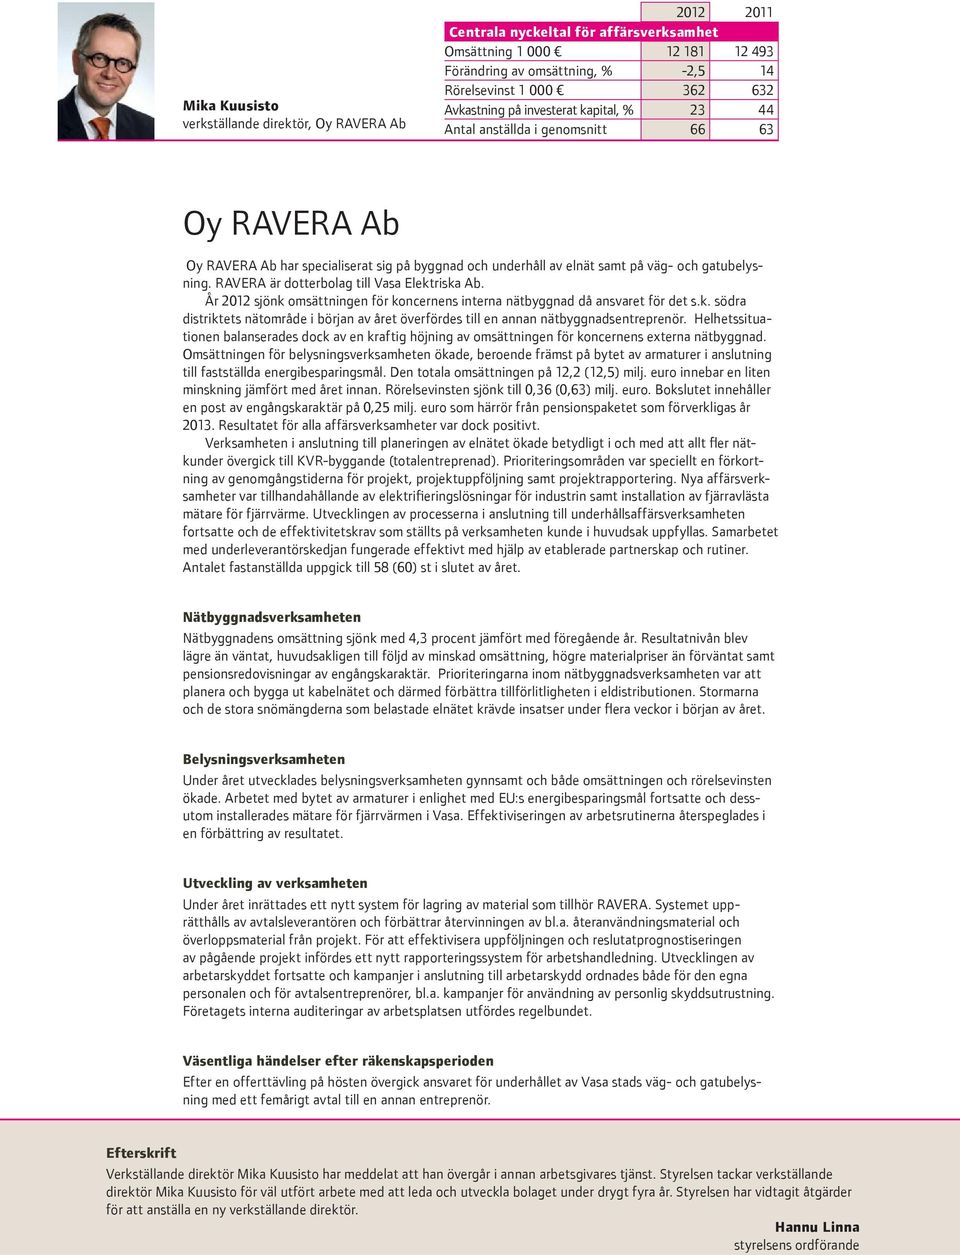 RAVERA är dotterbolag till Vasa Elektriska Ab. År 2012 sjönk omsättningen för koncernens interna nätbyggnad då ansvaret för det s.k. södra distriktets nätområde i början av året överfördes till en annan nätbyggnadsentreprenör.